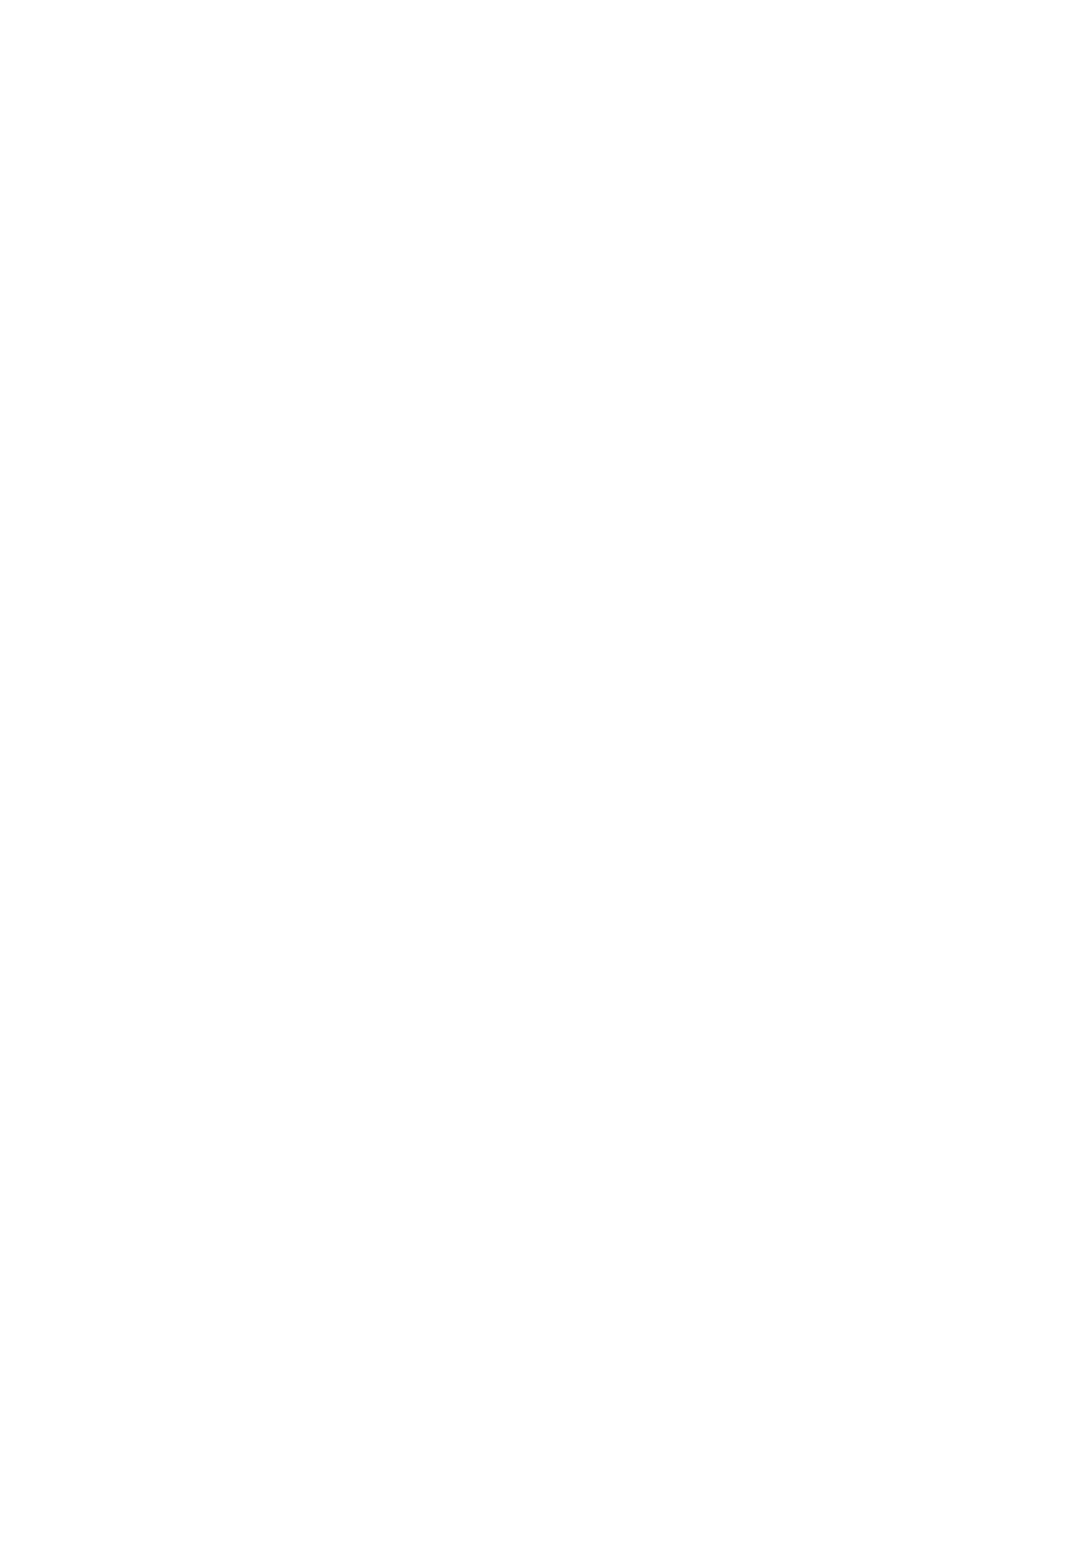  2016 - Csobot Adél egy földig érő bordó ruhában mutatta meg gömbölyödő pocakját